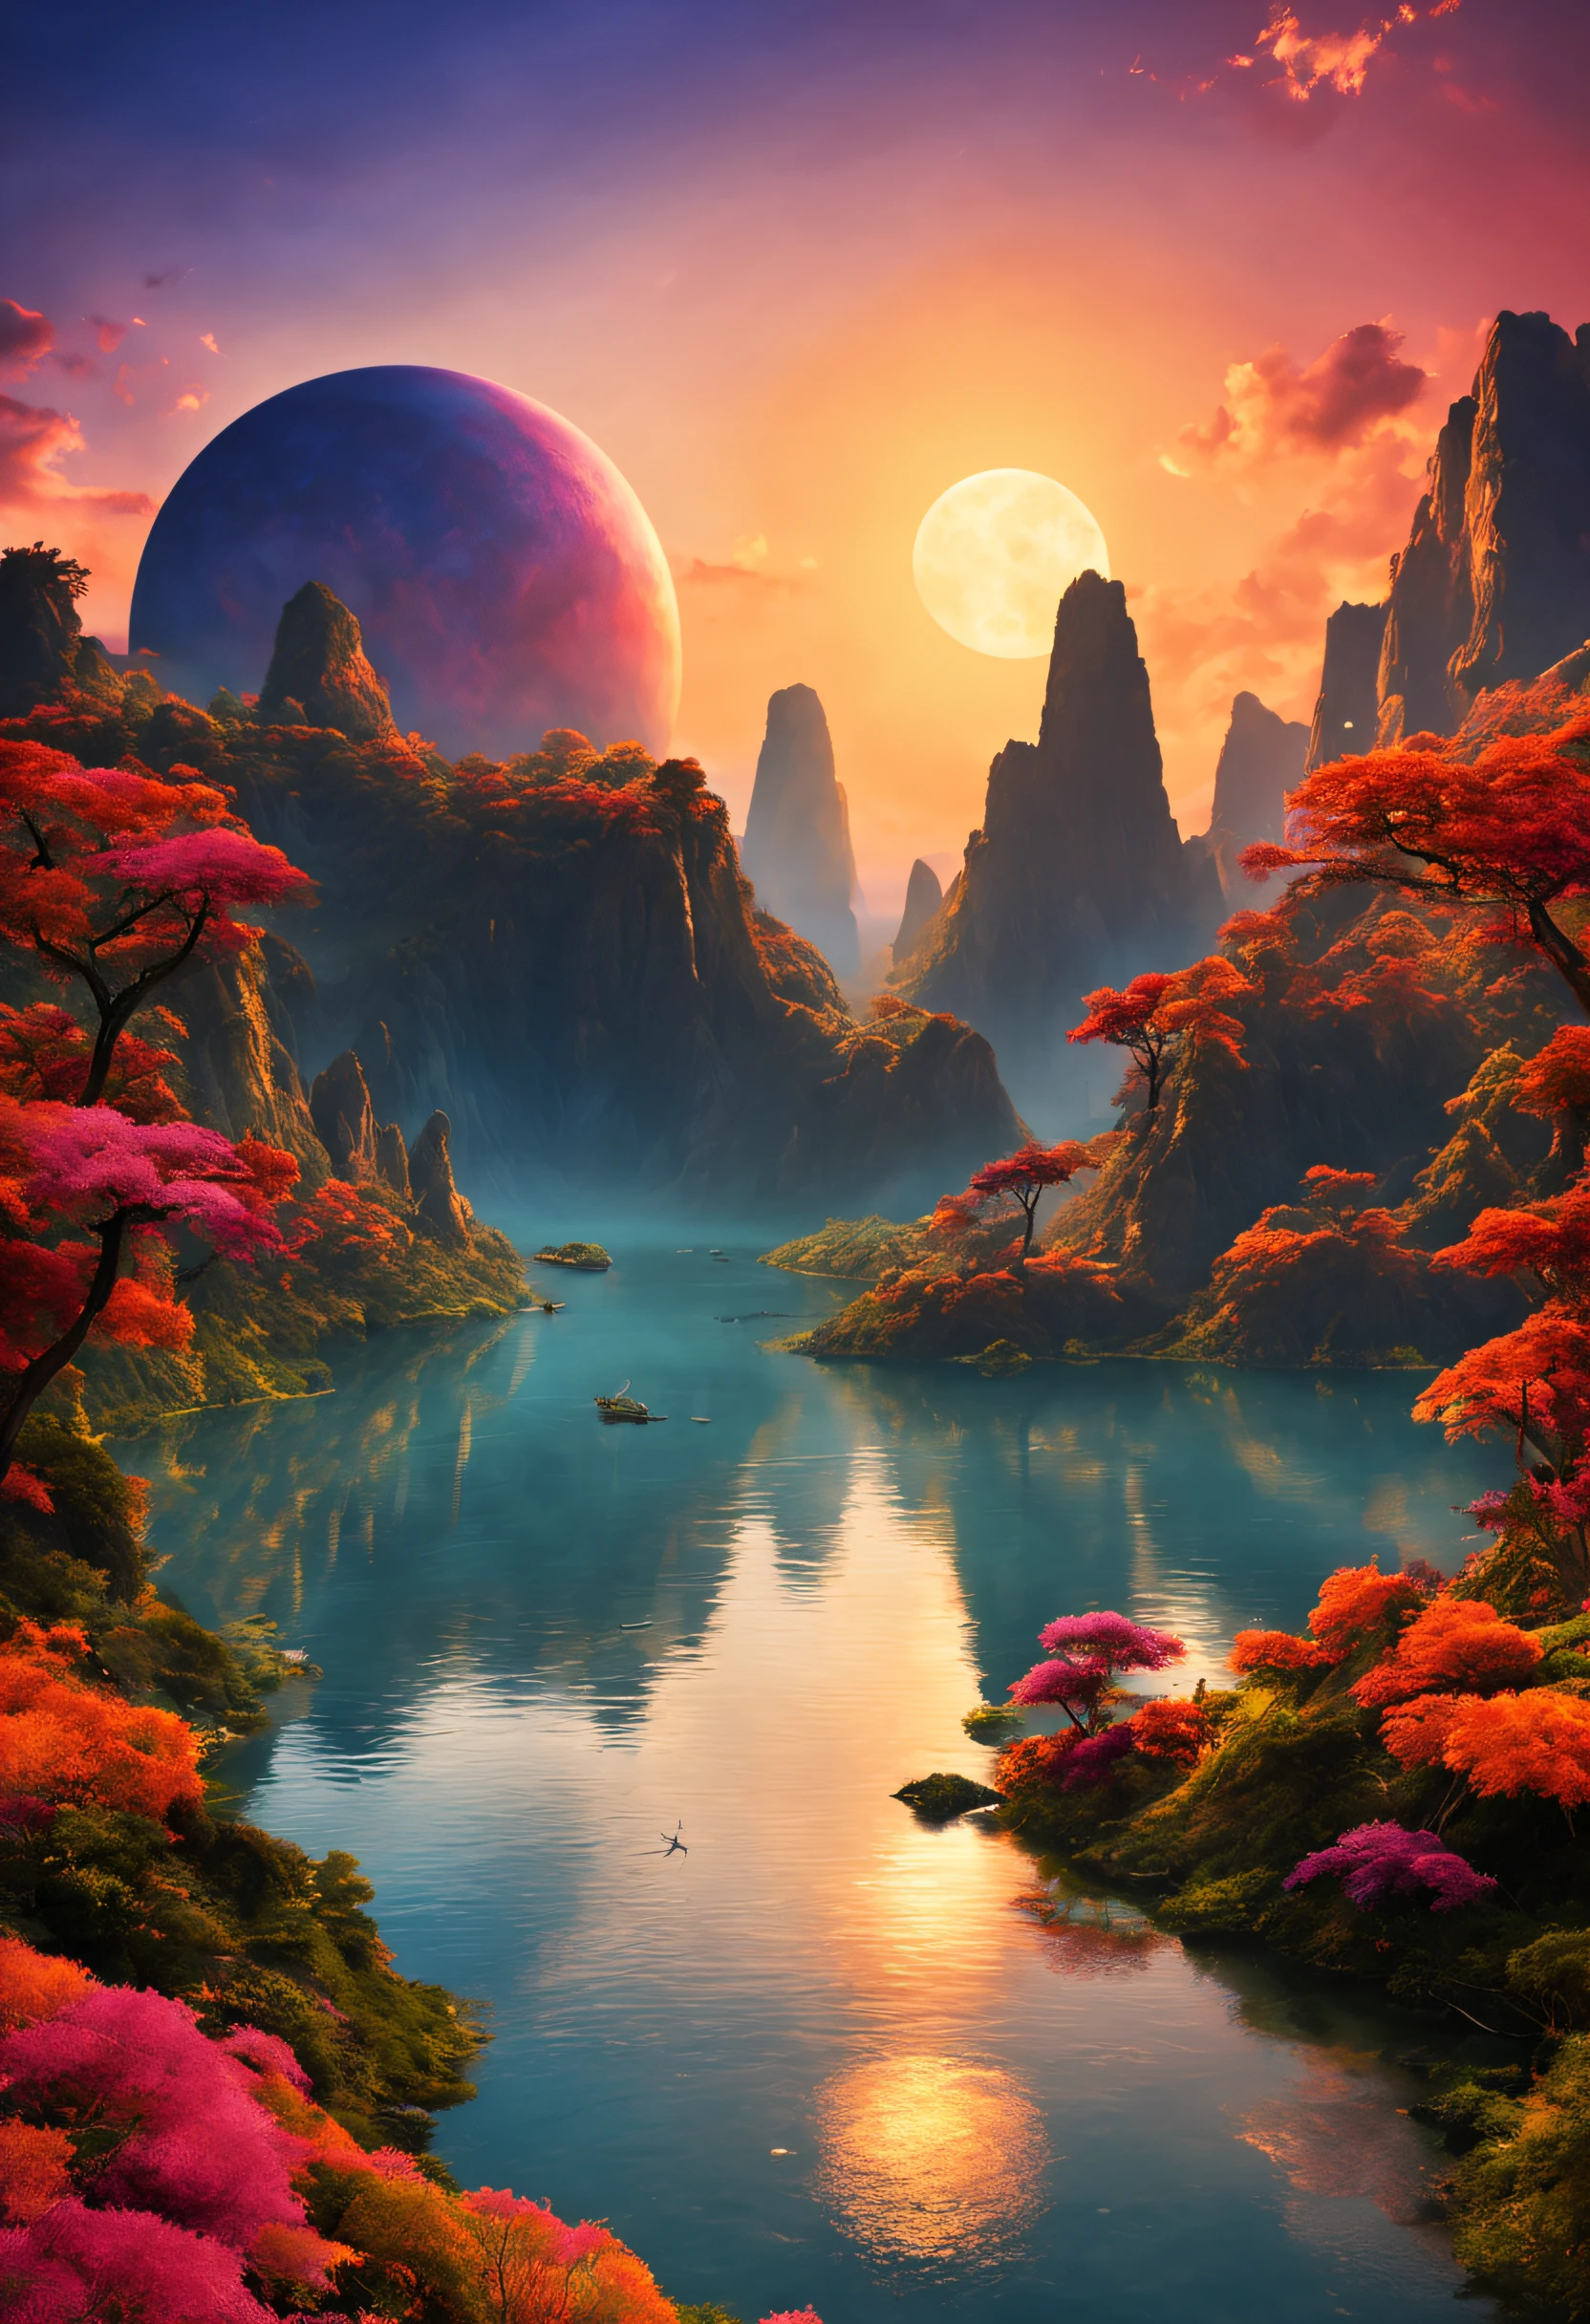 色とりどりの夕焼けと並外れた景色が広がる、異国の惑星の美しく壮大な想像上の風景。